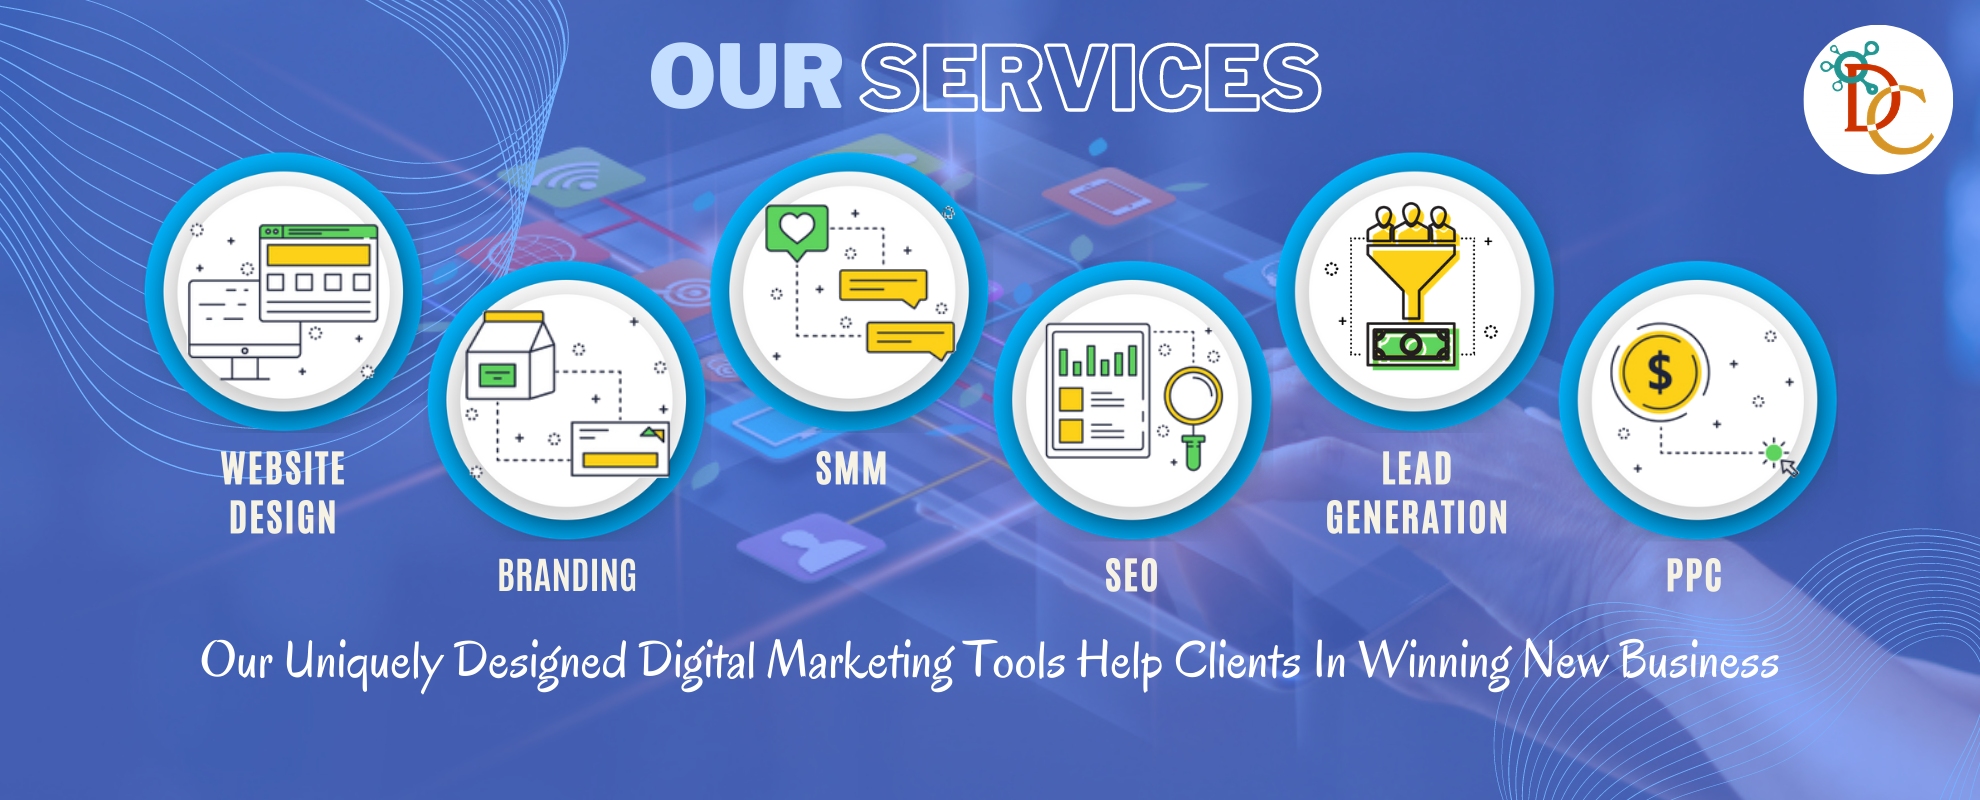 Our Services | Deskcyber